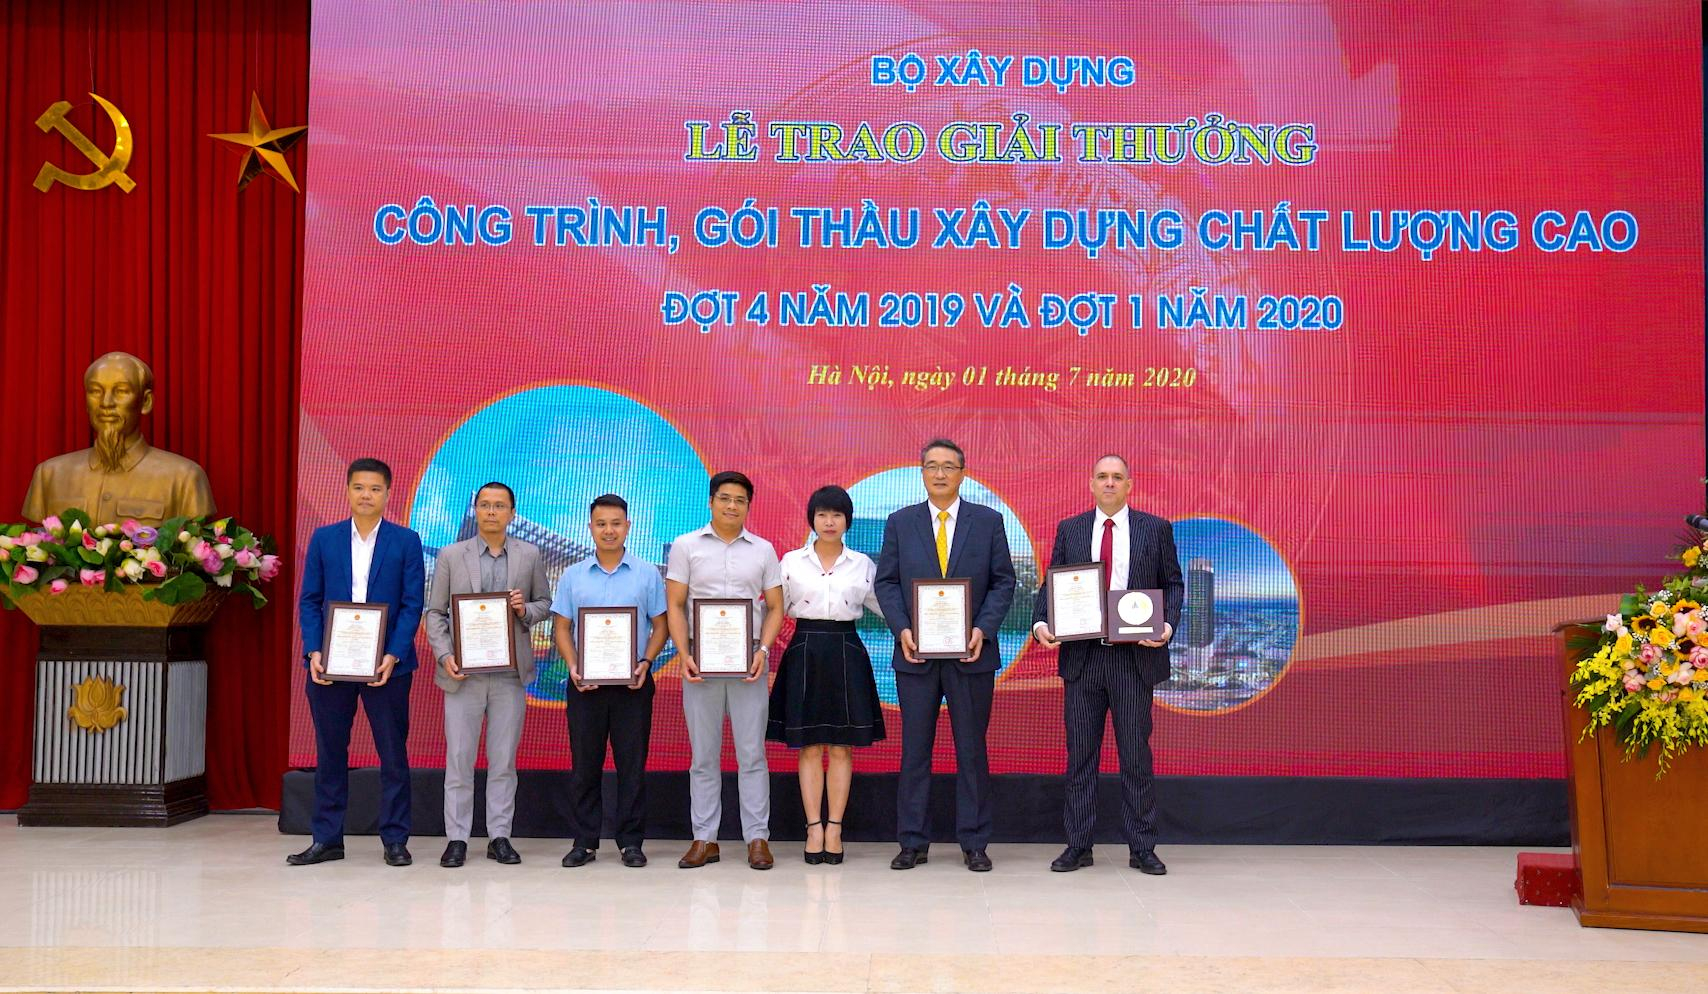 Movenpick Resort Cam Ranh và Radisson Blu Resort Cam Ranh nhận giải thưởng Công trình chất lượng cao